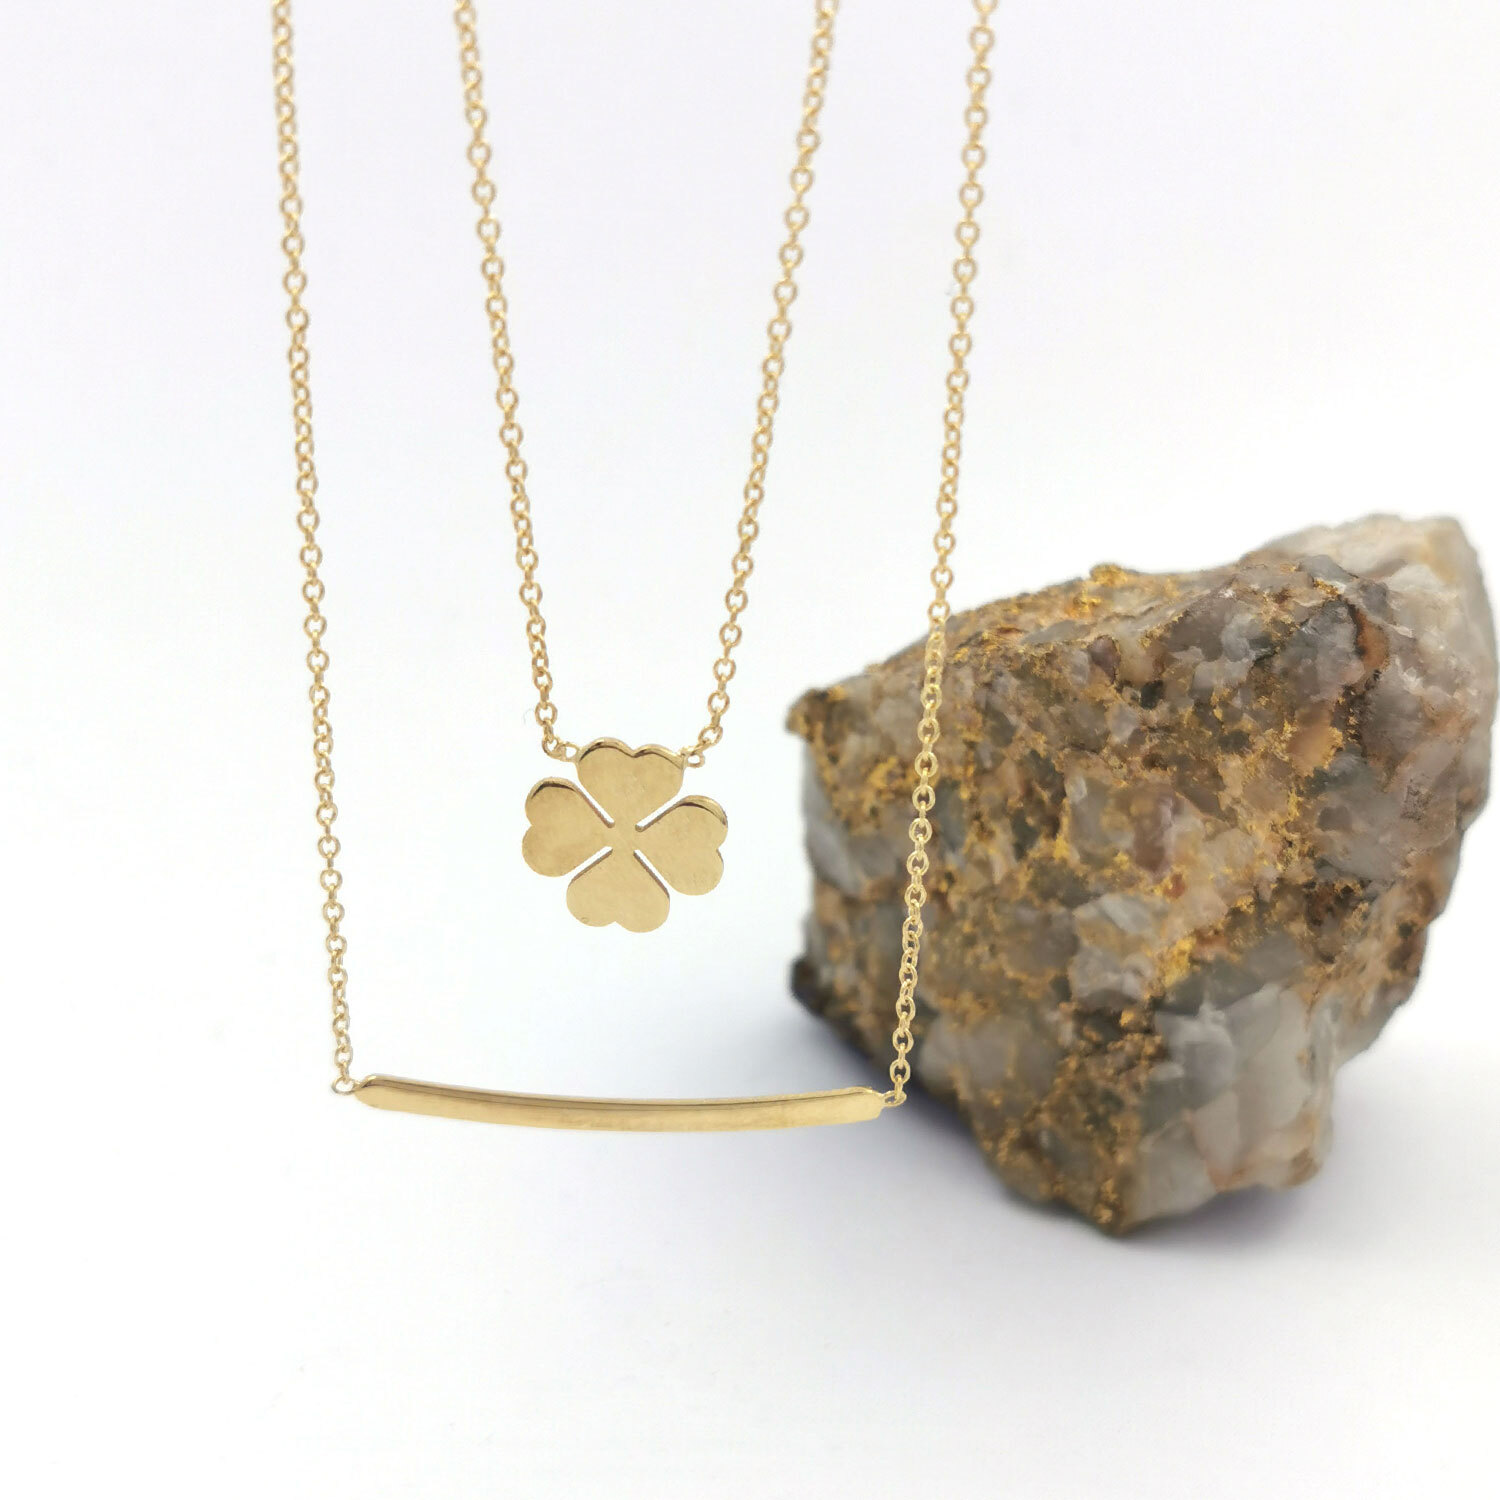 gold lapis lazul pendant, solid 9ct gold necklace, natural lapis lazu, 18”  chain | eBay